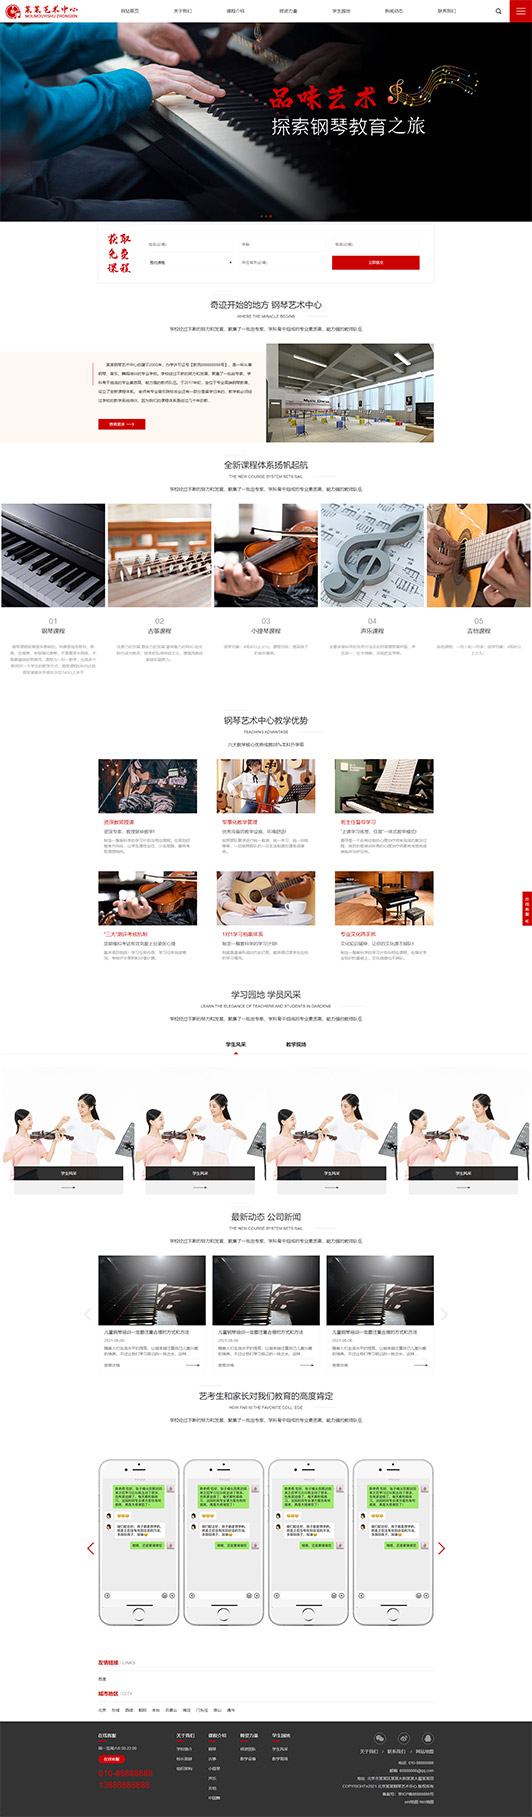 日照钢琴艺术培训公司响应式企业网站